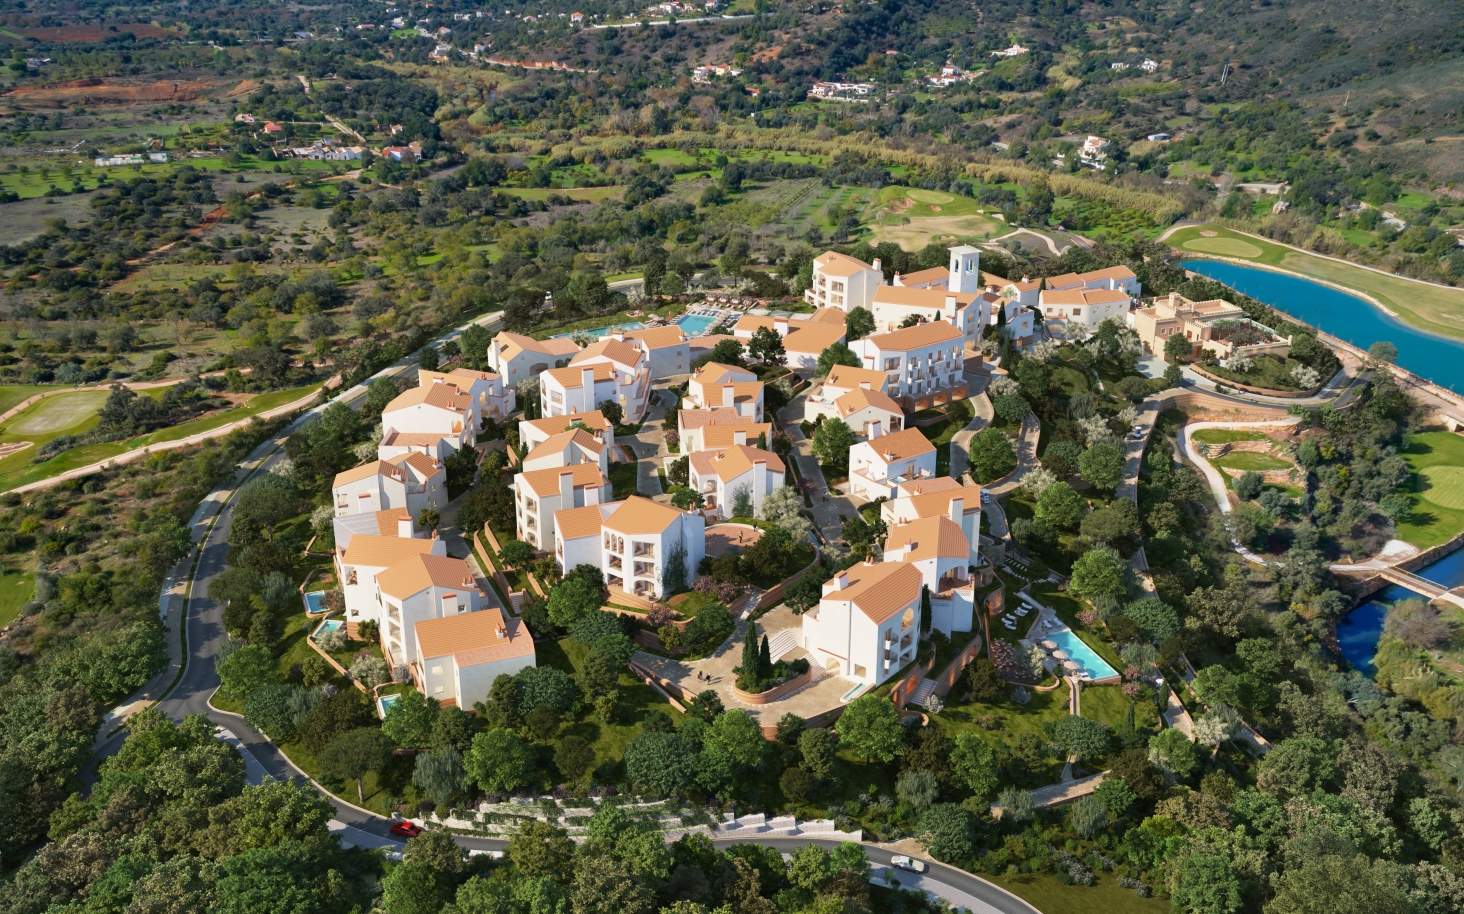 Apartamento de 2 dormitorios con piscina, resort exclusivo, Querença, Algarve_168097